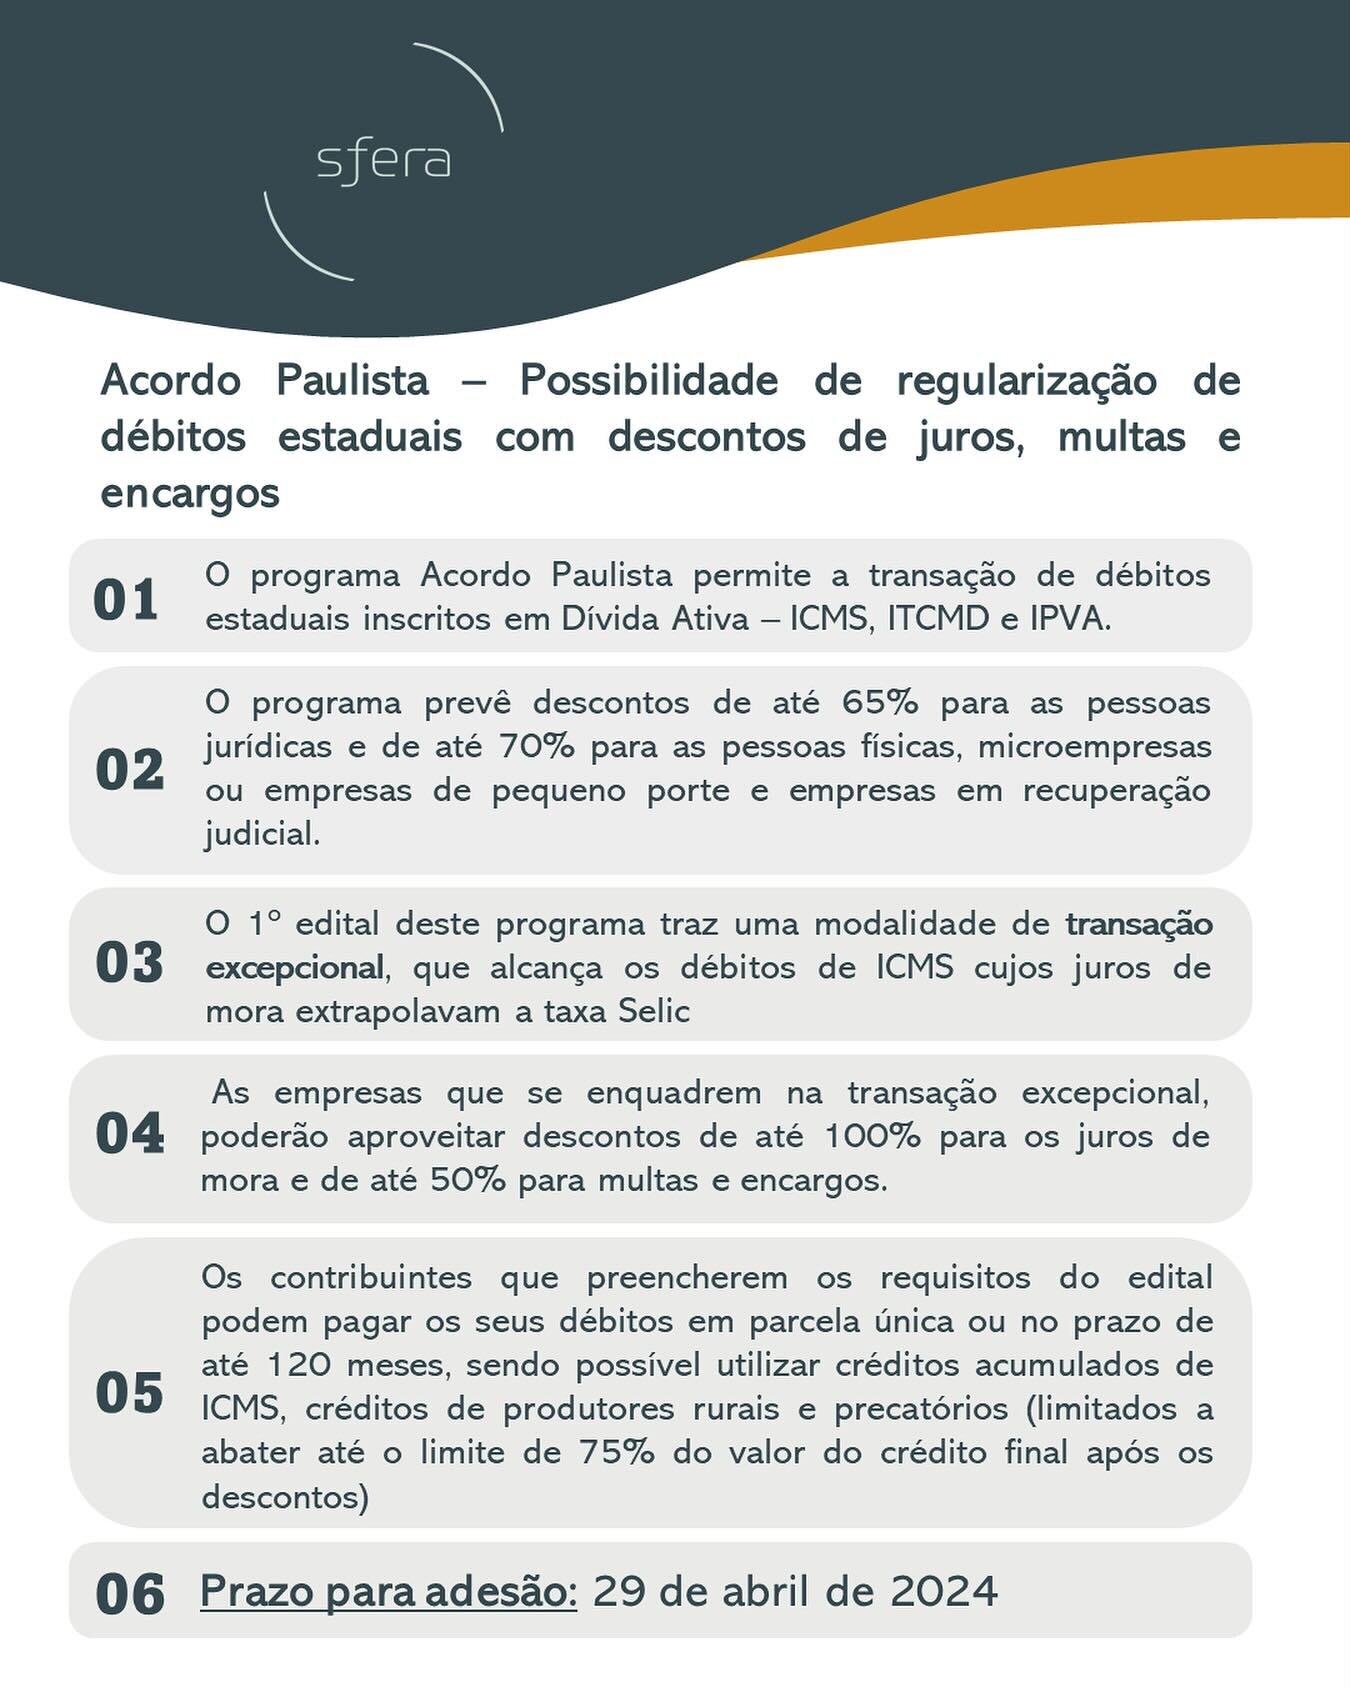 Acordo Paulista &eacute; regulamentado - Resolu&ccedil;&atilde;o PGE n&ordm; 06/2024. Vejam breve resumo do programa para regulariza&ccedil;&atilde;o de d&eacute;bitos estaduais.